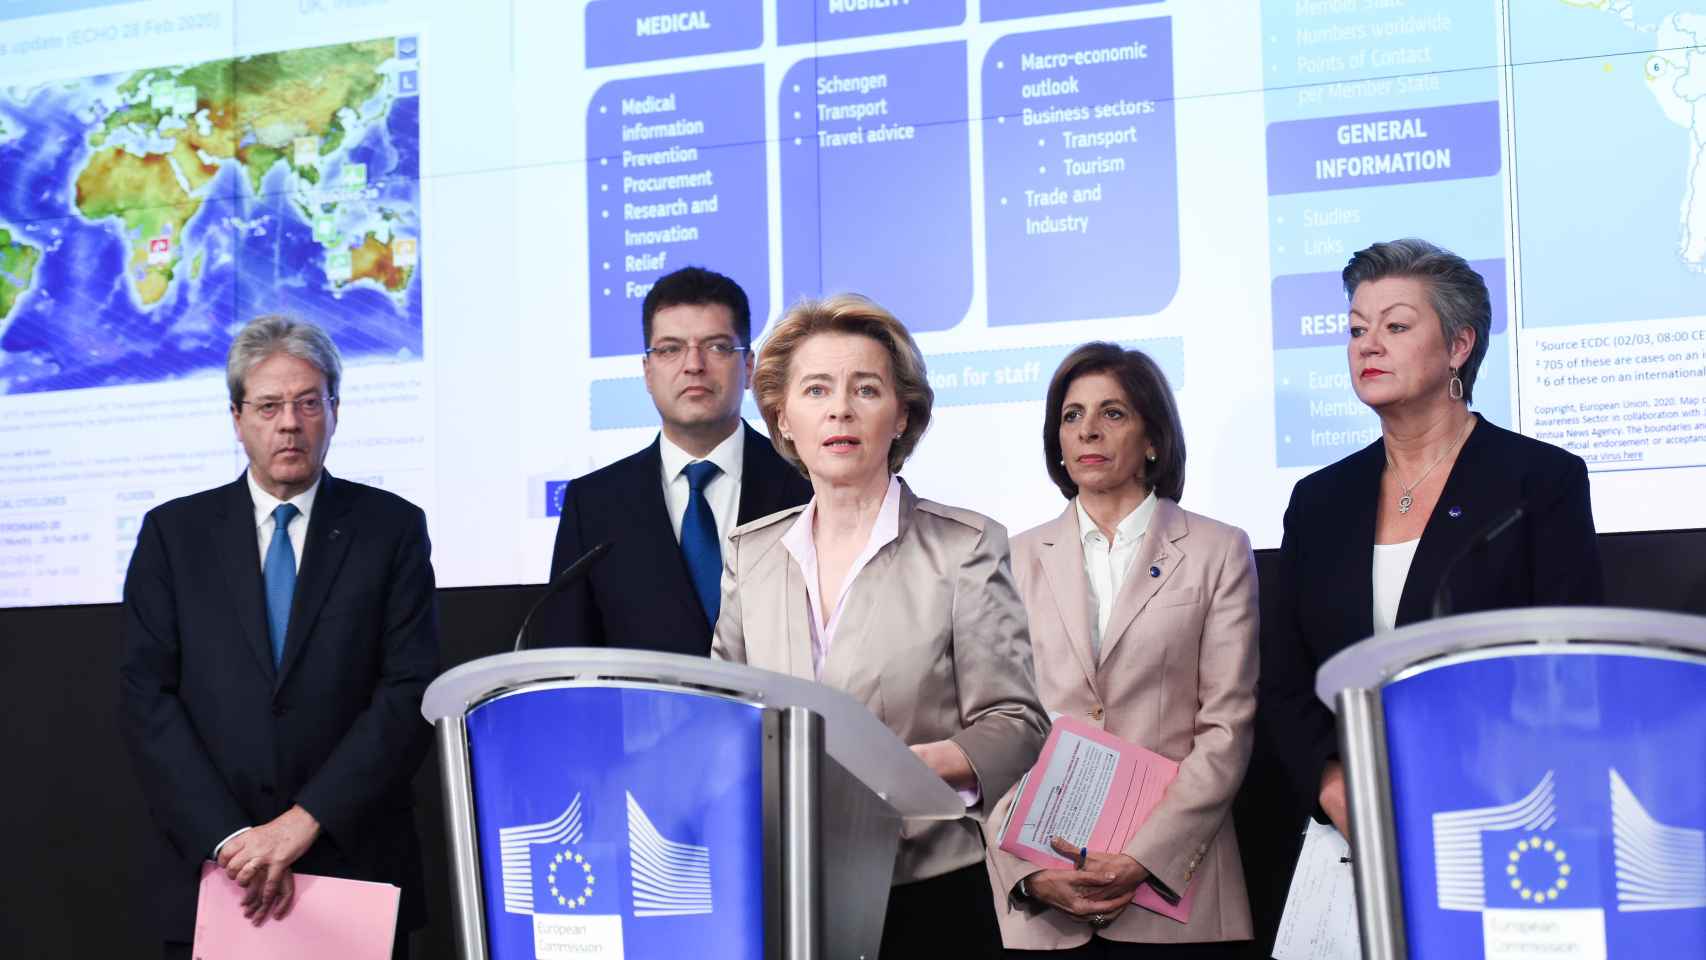 Ursula von der Leyen, Paolo Gentiloni y el resto del gabinete de crisis contra el coronavirus